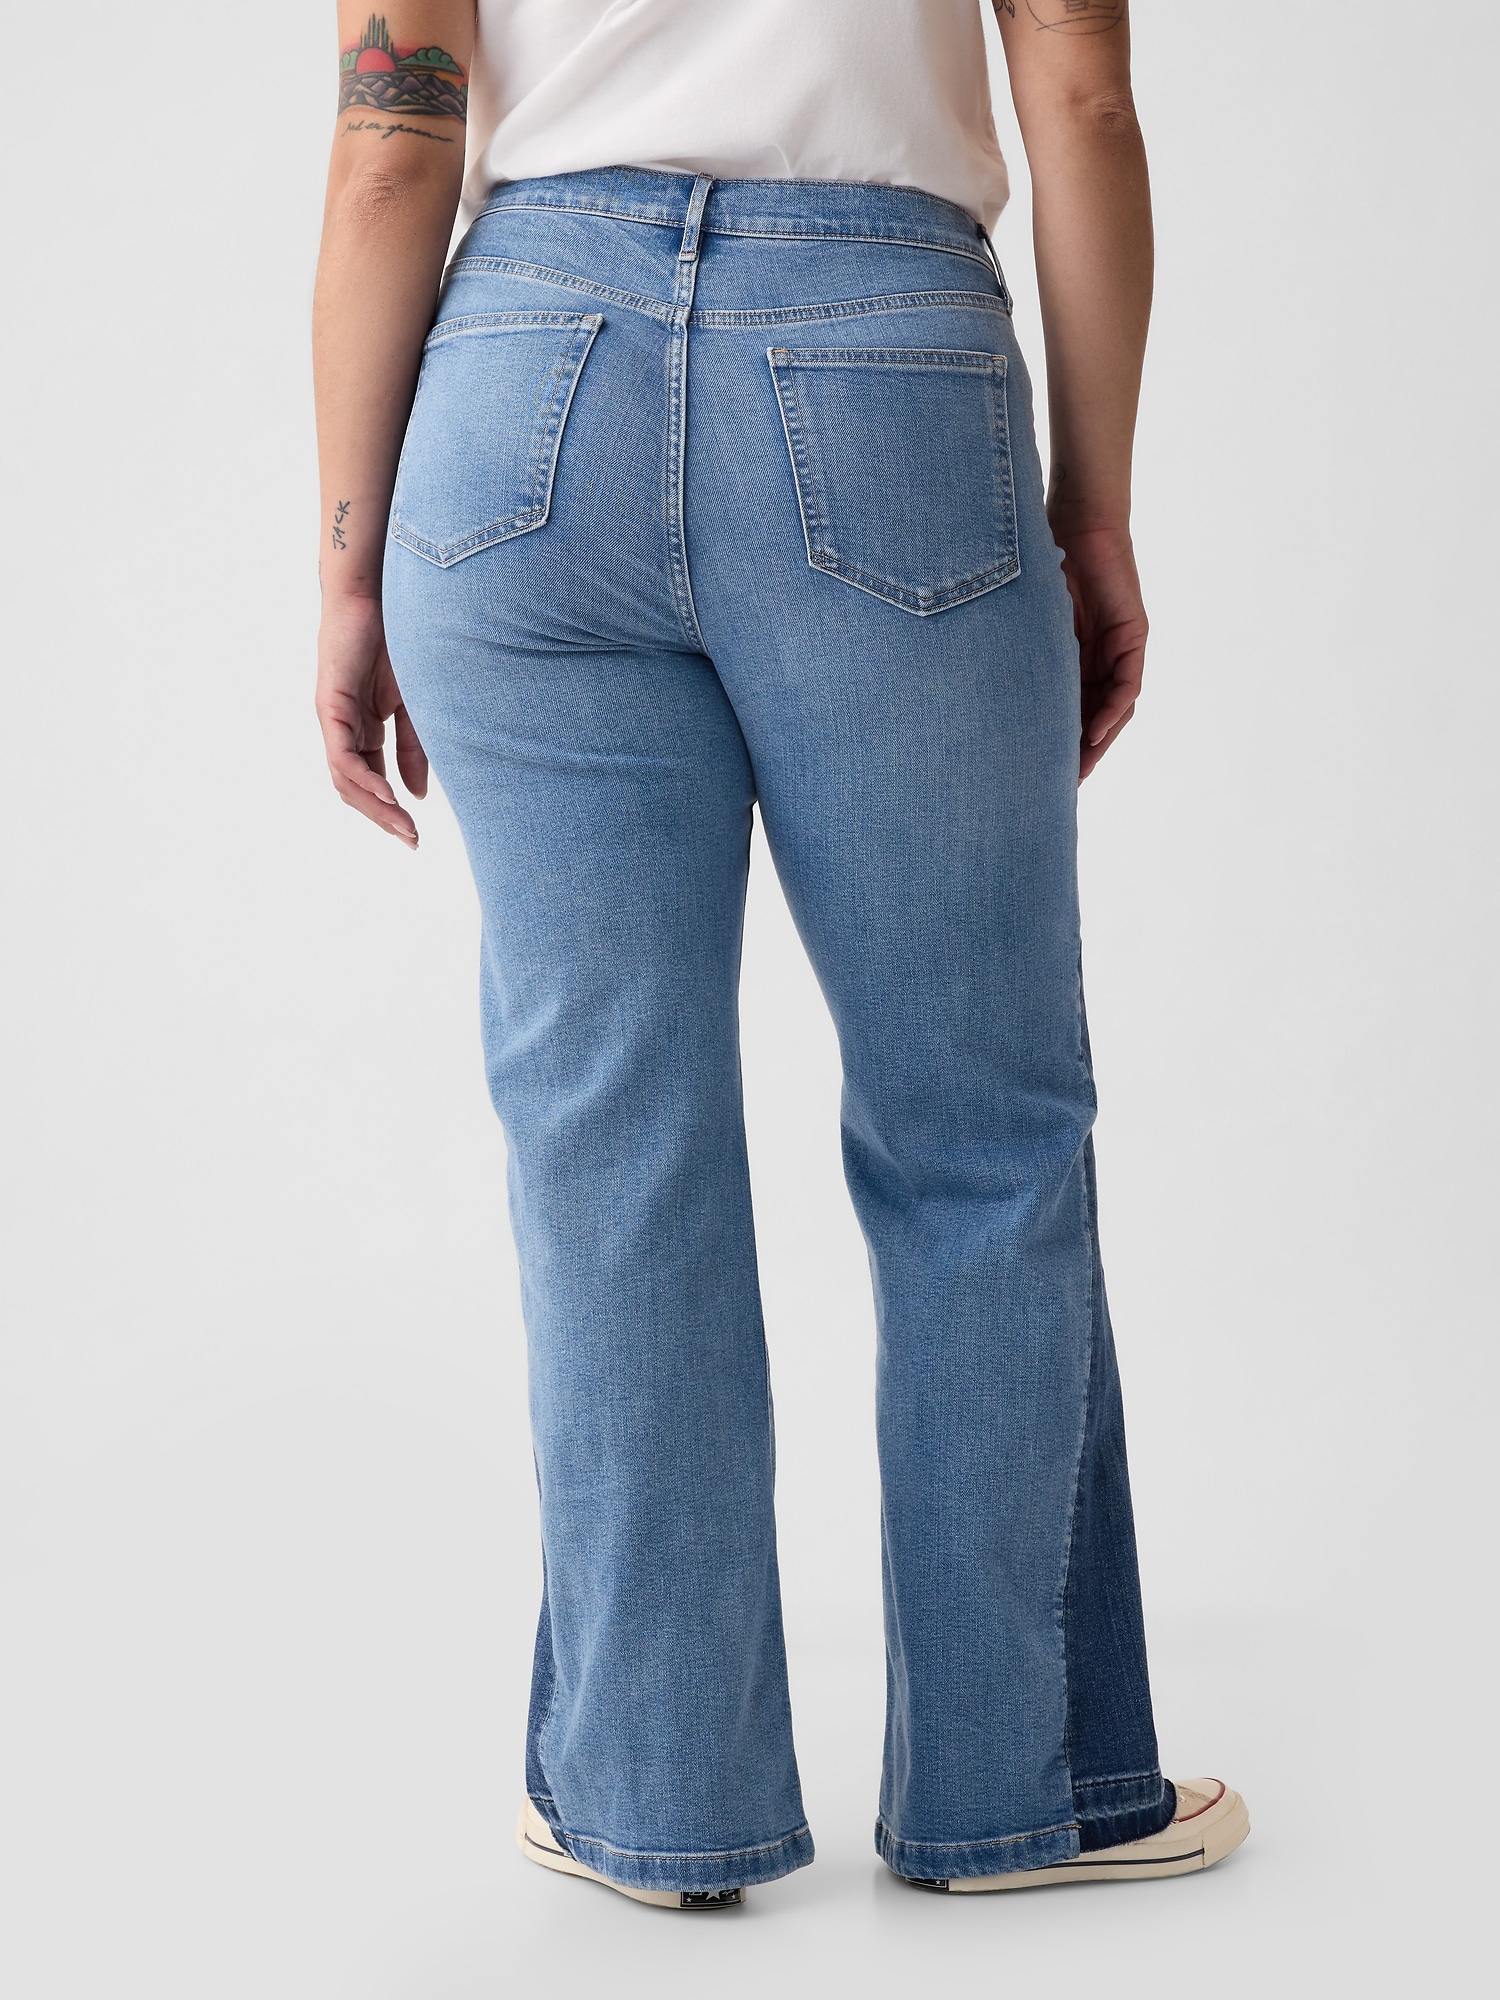 1970s jeans, wide leg, vintage bellbottoms, flap front pockets, size, Black Label Vintage